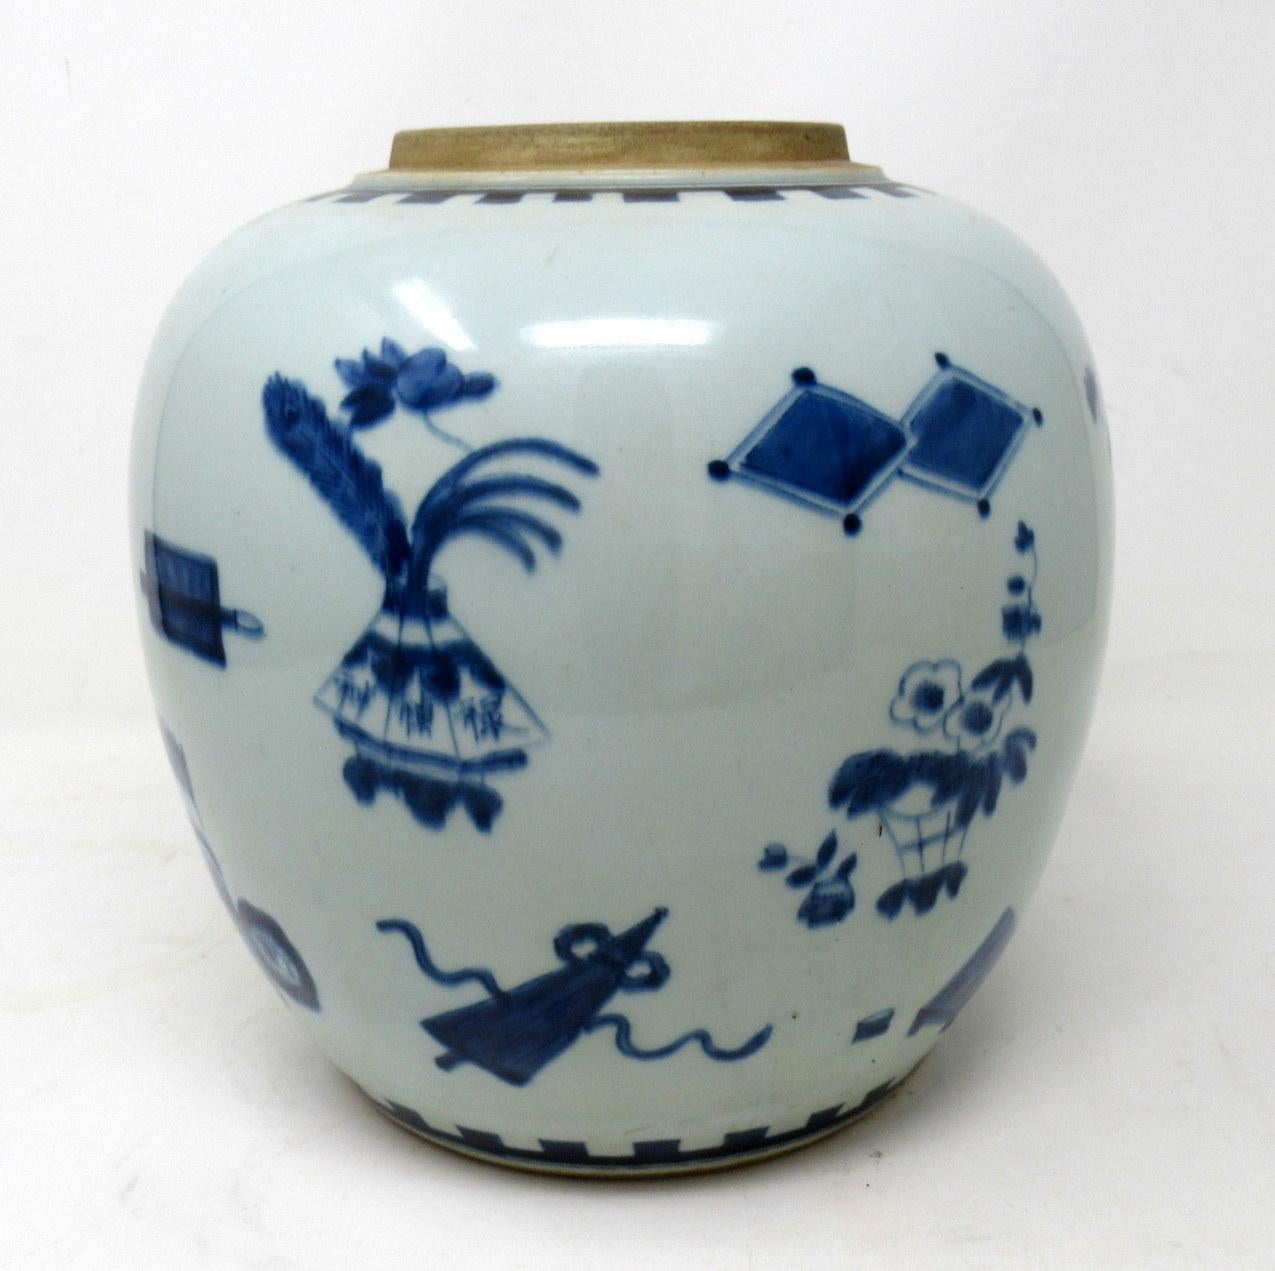 Ceramic Antique Blue White Chinese Export Porcelain Ginger Jar Vase Urn Qing Dynasty